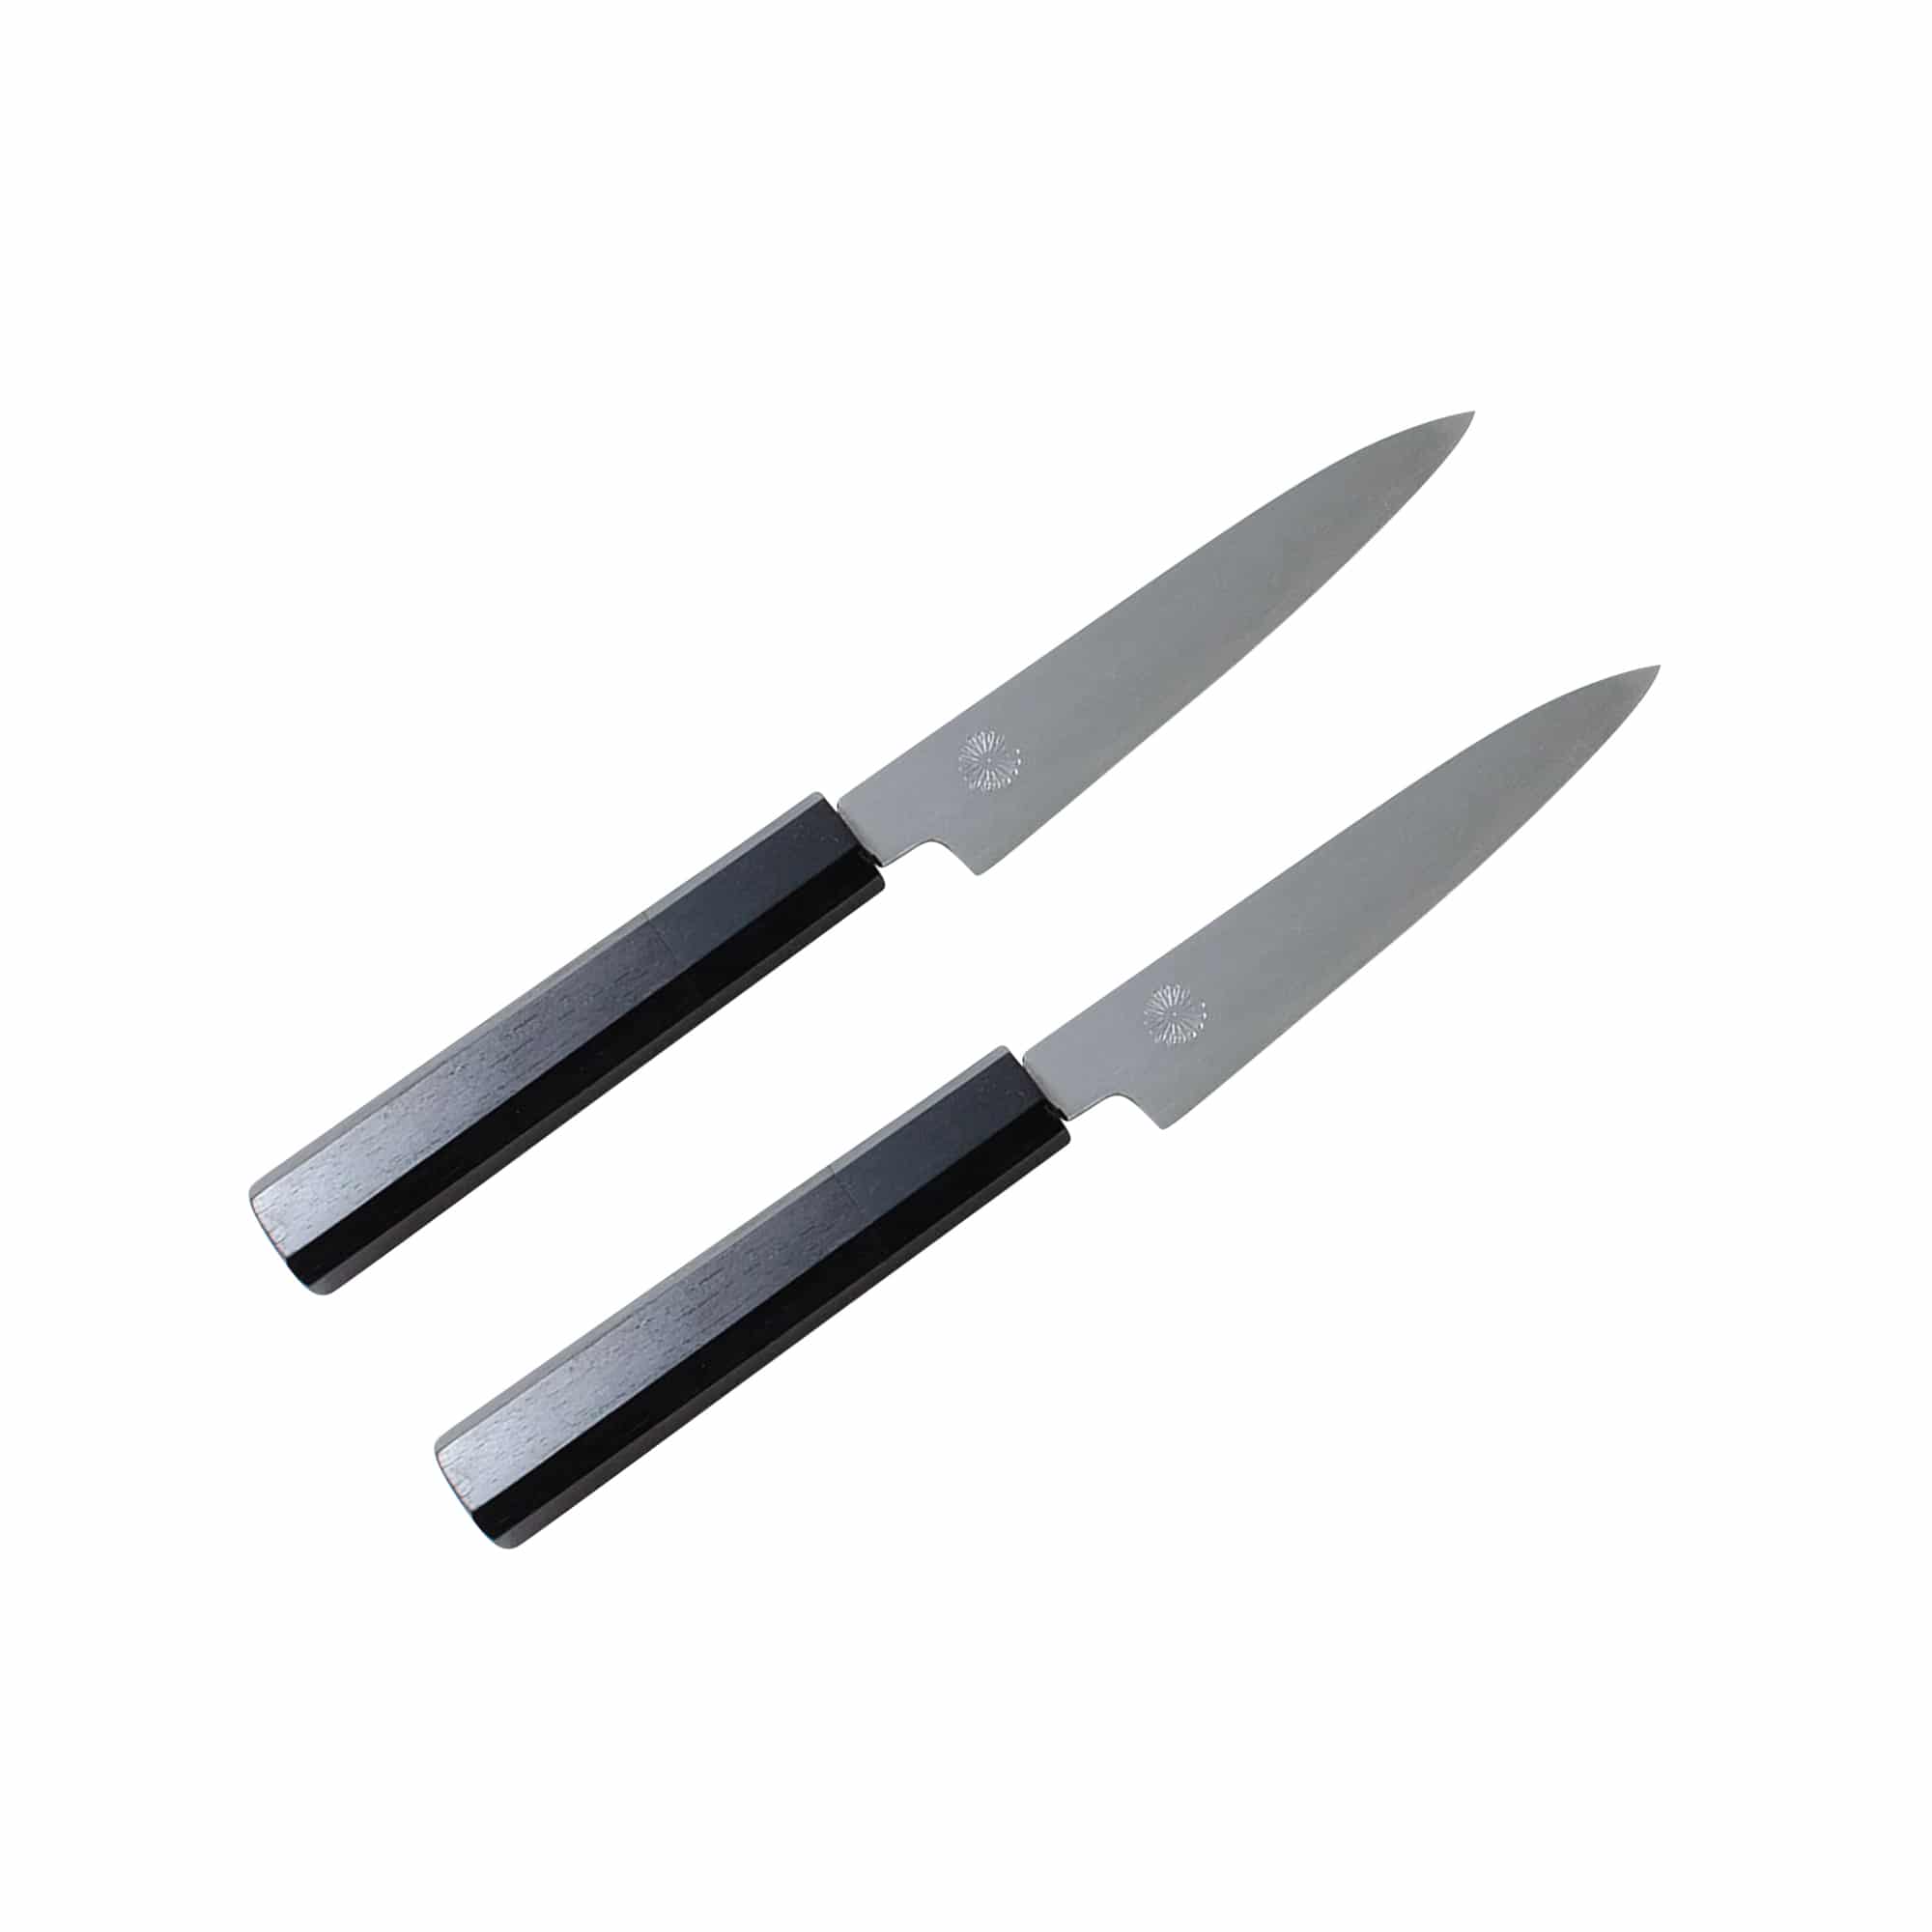 Kikusumi Black Ceramic Collection 5 Piece Chef Knife Gift Set Bundle - BENI  Red Handle - Kikusumi Knife SHOP